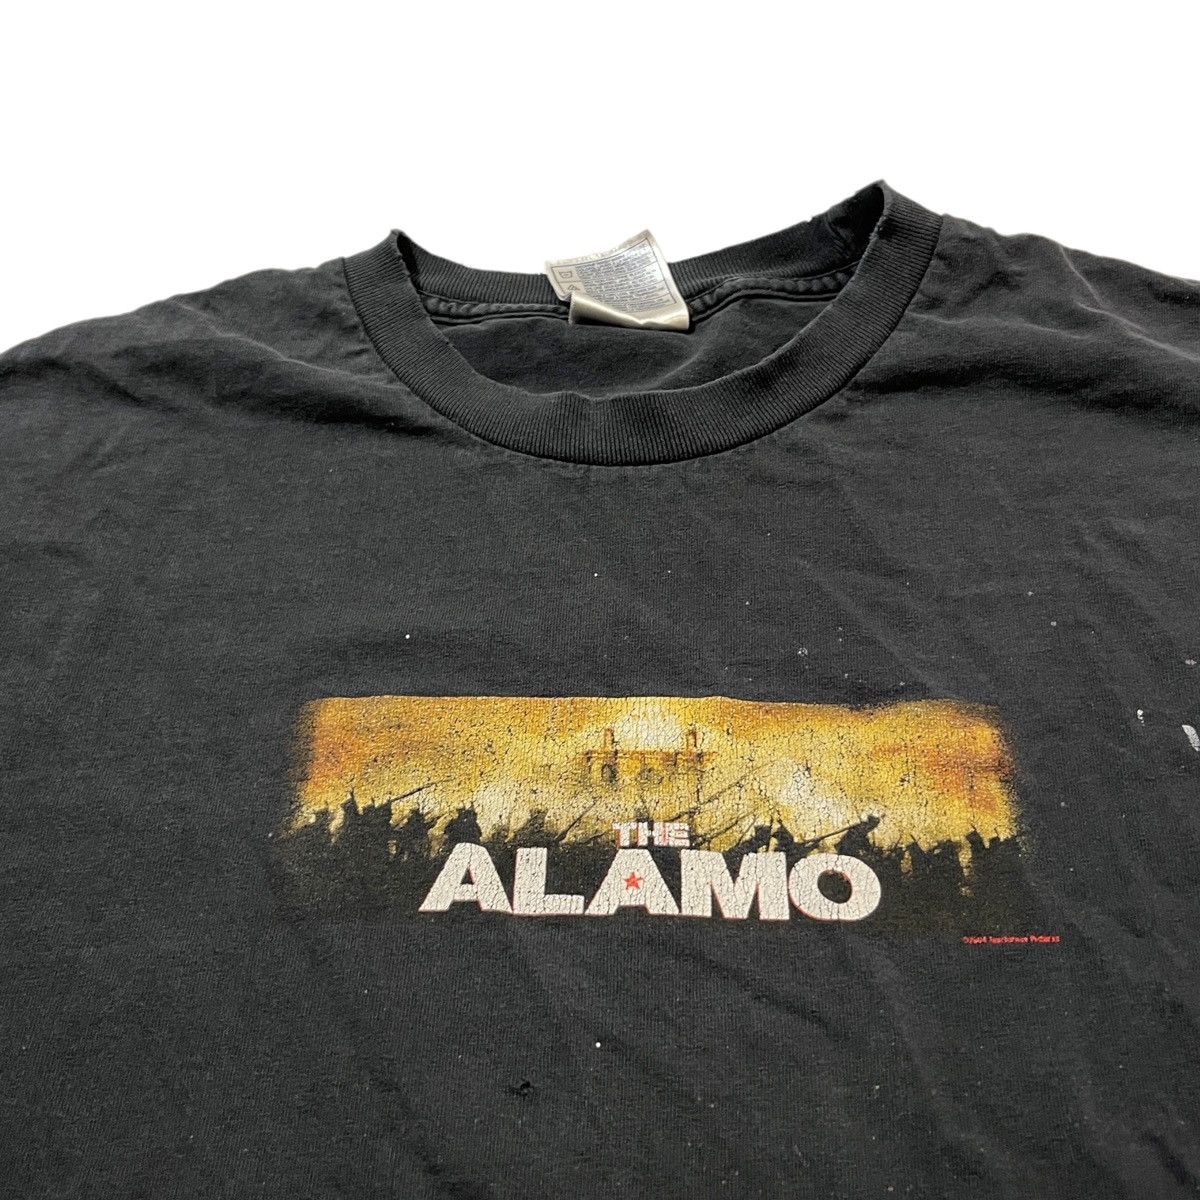 Vintage 2004 The Alamo Movie Tee Size US XL / EU 56 / 4 - 3 Thumbnail